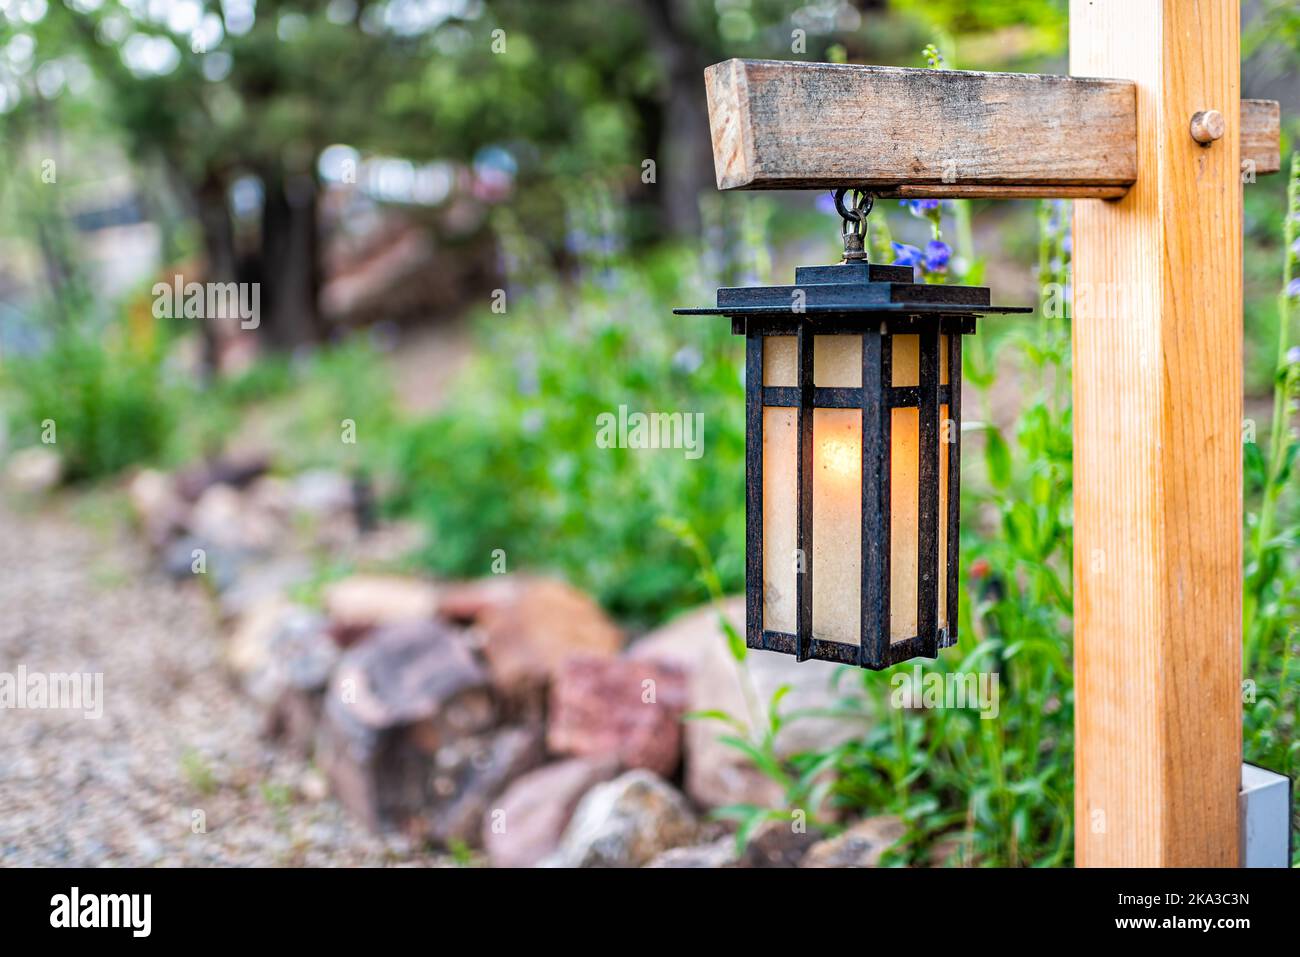 Hängende Laternen-Lampe im japanischen Stil auf Holzpfosten im japanischen  Garten mit Pfad zum Tempel oder Schrein mit grünem Laub im Hintergrund  Stockfotografie - Alamy